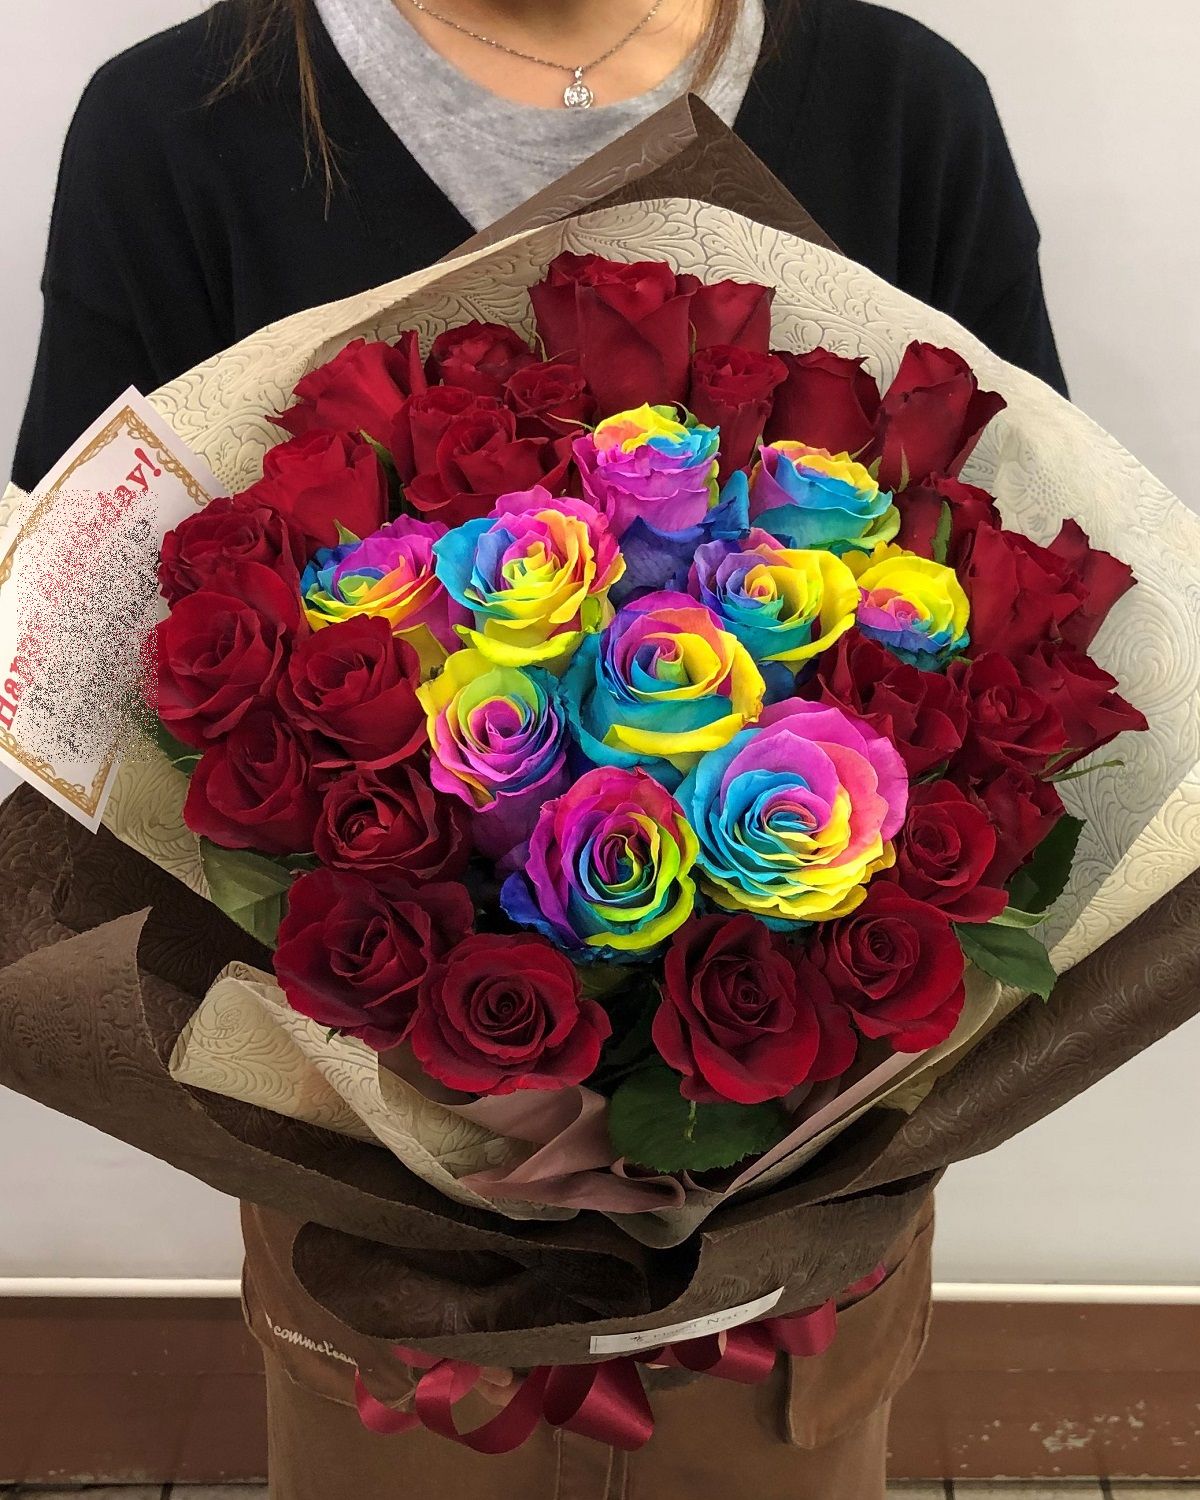 オーダーメイド花 横浜の花屋florist Naoは無料配達 関内 みなとみらいなど配達実績多数